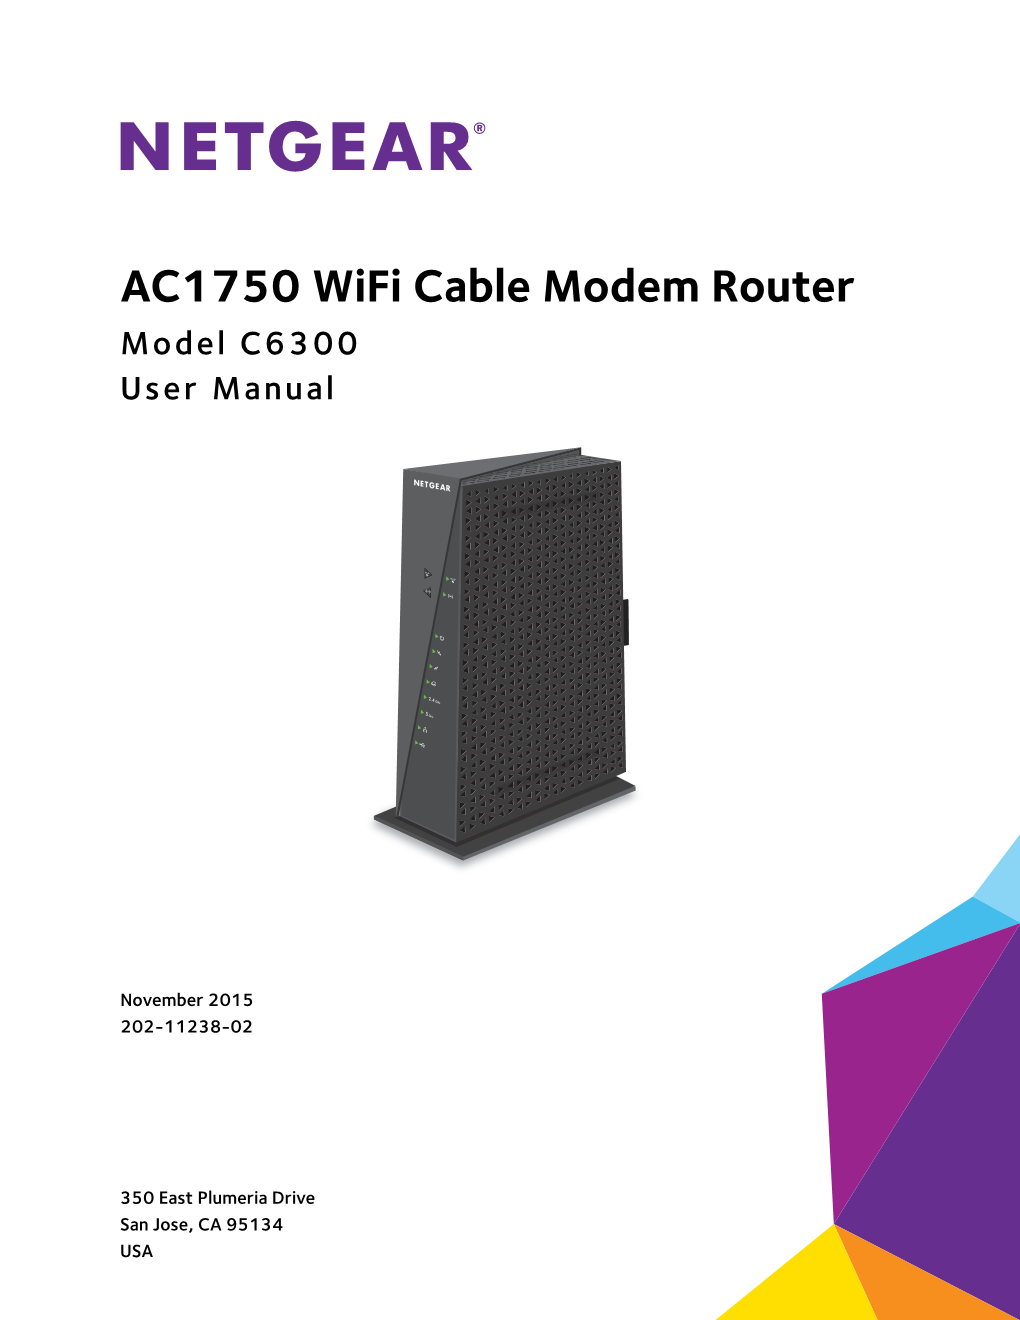 NETGEAR AC1750 Wifi Modem Router